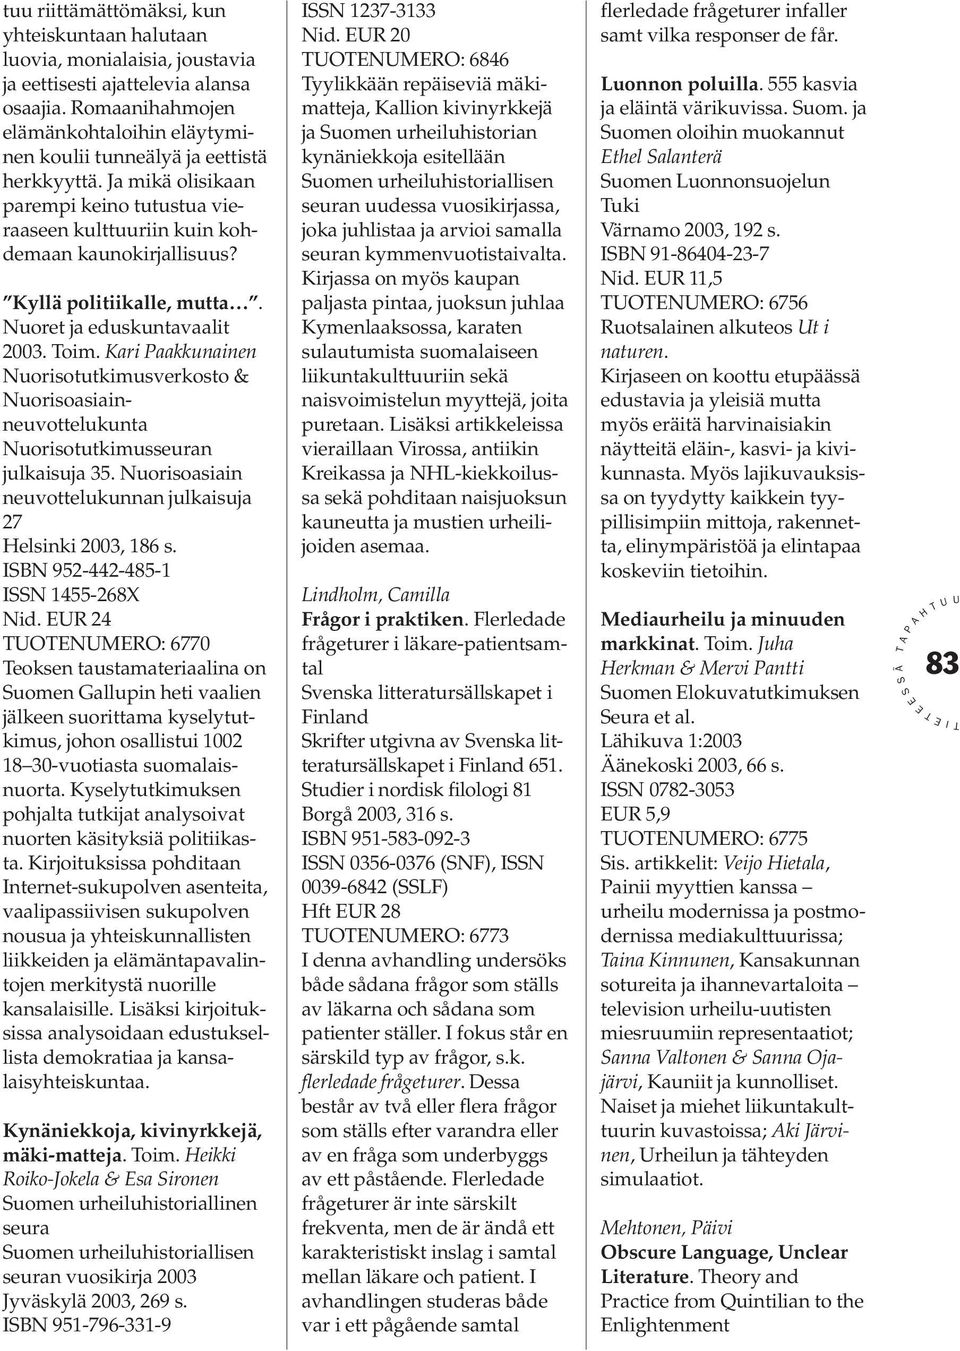 Kyllä politiikalle, mutta. Nuoret ja eduskuntavaalit 2003. oim. Kari aakkunainen Nuorisotutkimusverkosto & Nuorisoasiainneuvottelukunta Nuorisotutkimusseuran julkaisuja 35.